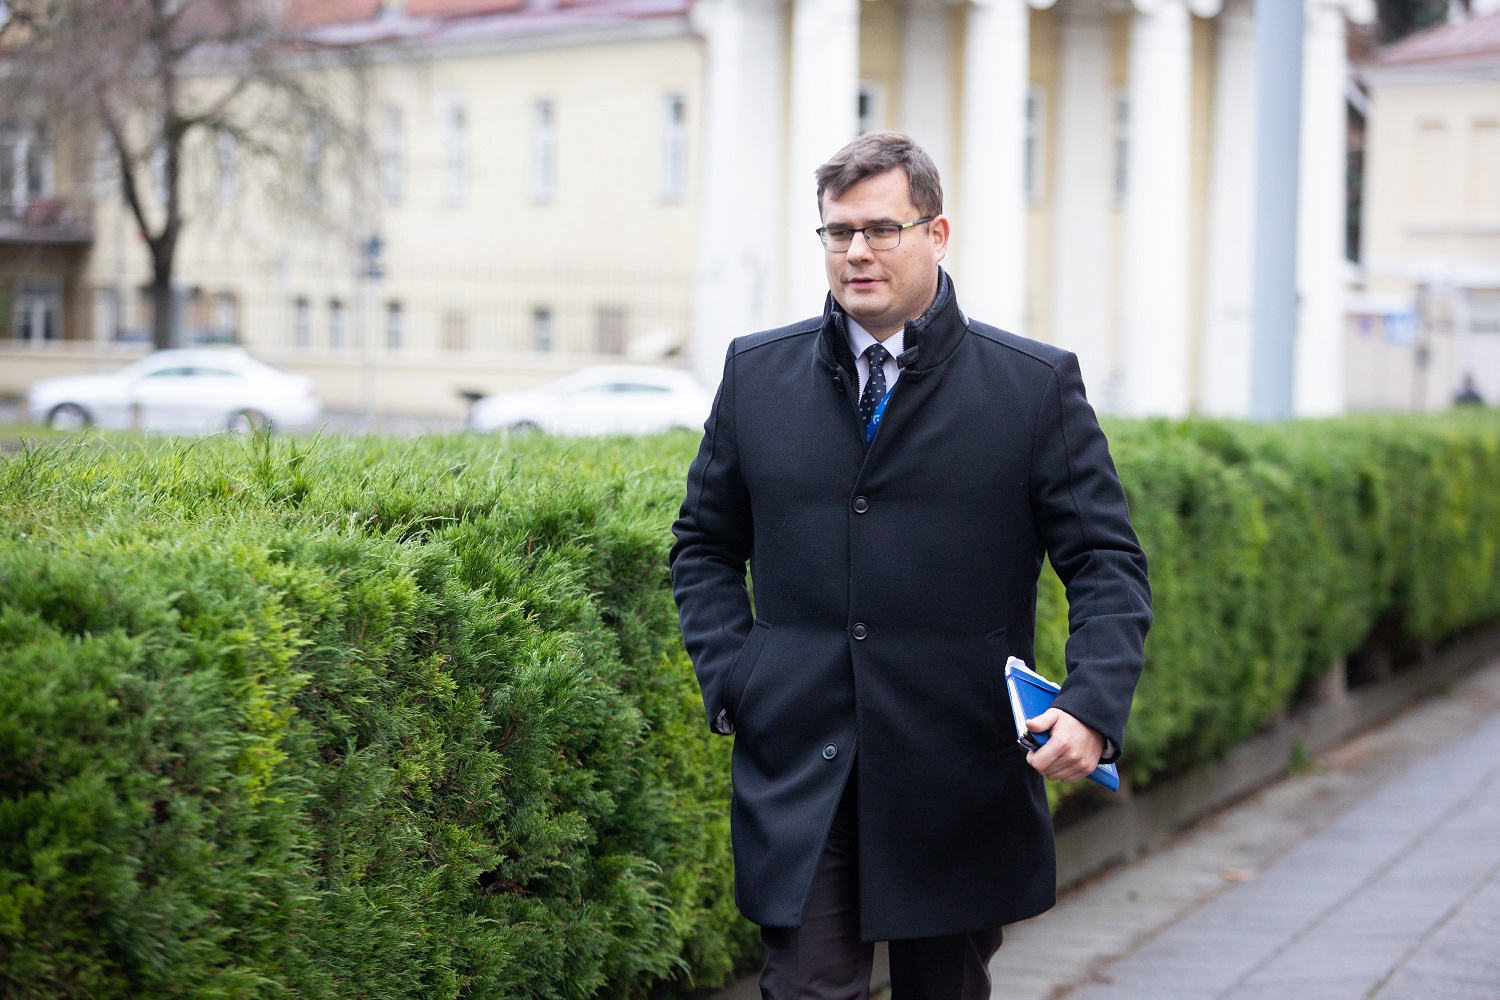 L. Kasčiūnas: situacija dėl baltarusiškų trąšų kerta per mūsų valstybės autoritetą